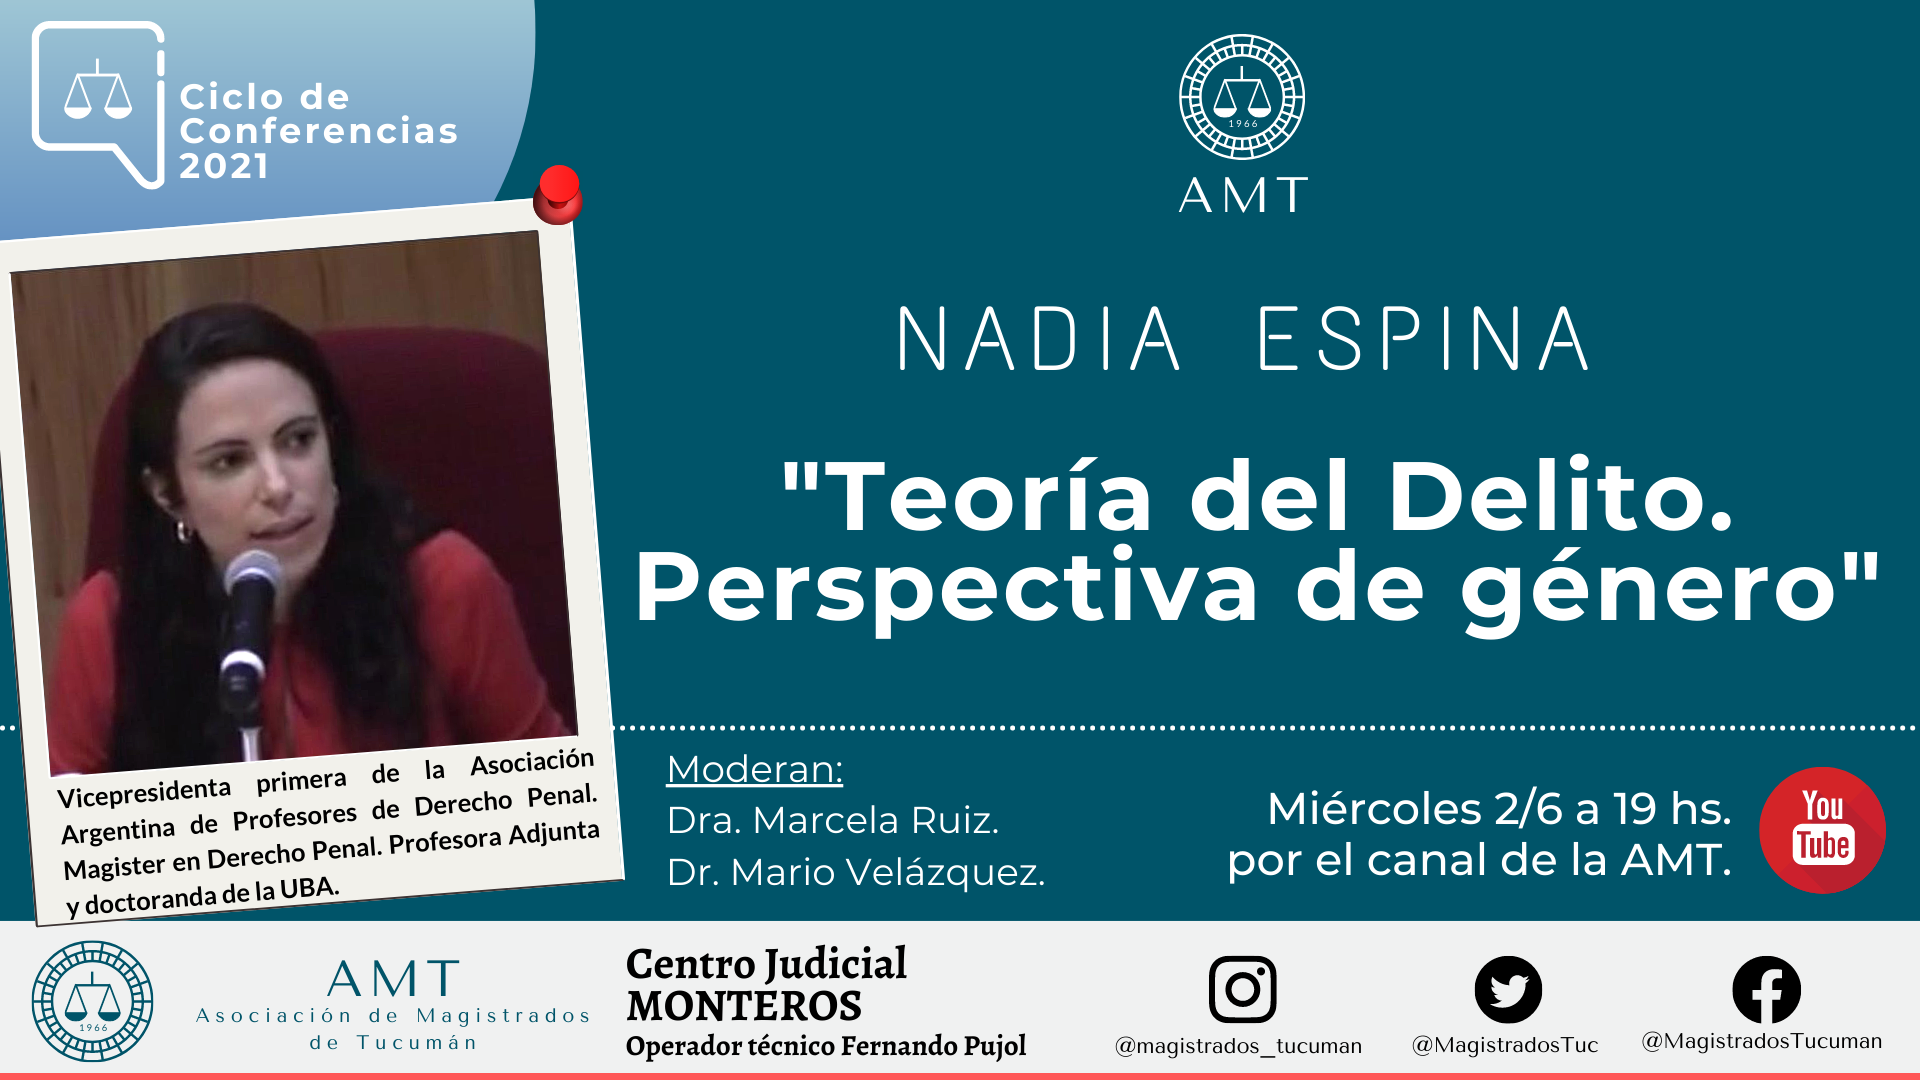 Vuelva a ver la conferencia de Nadia Espina «Teoría del Delito. Perspectiva de género»